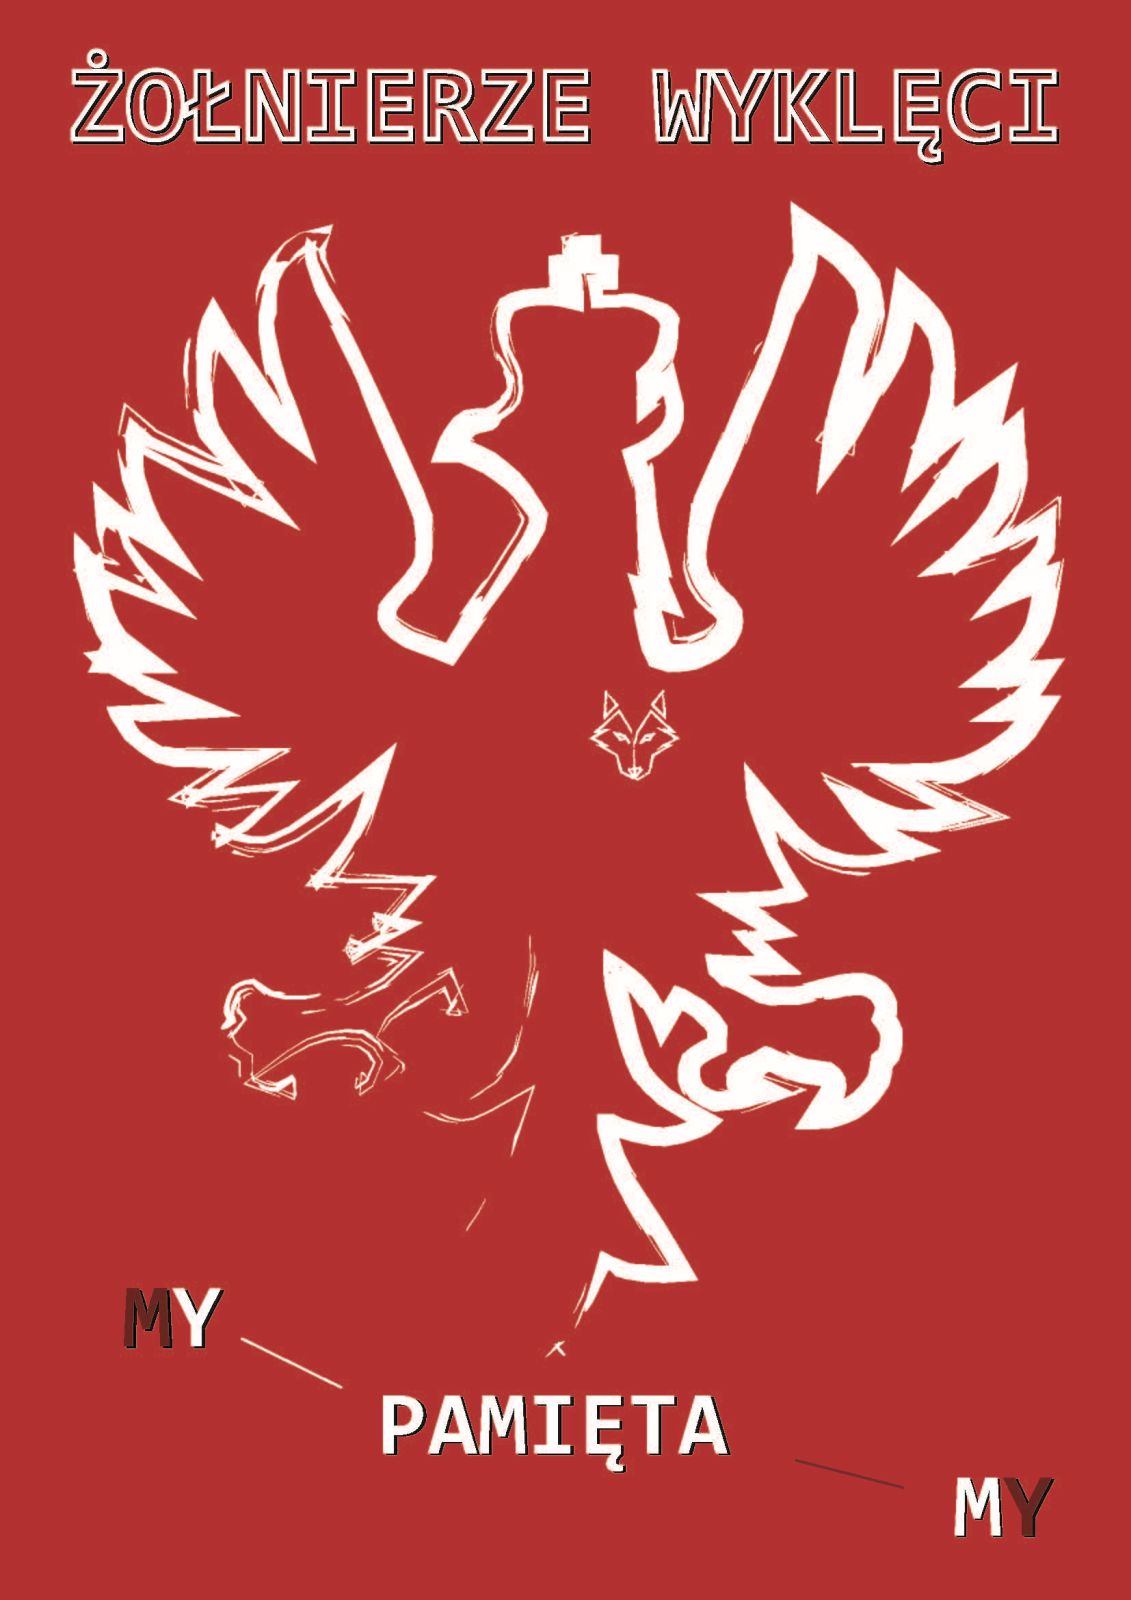 Gnyś Jakub – klasa 2Ep – Plakat w orientacji pionowej przedstawia biały zarysy godła Polski - orła w koronie, na którego prawej piersi jest głowa wilka (znak Żołnierzy Wyklętych). Tło plakatu jest czerwone. Nad grafiką orła widnieje napis „Żołnierze wyklęci”. Pod grafiką orła jest napis „My pamiętamy”.